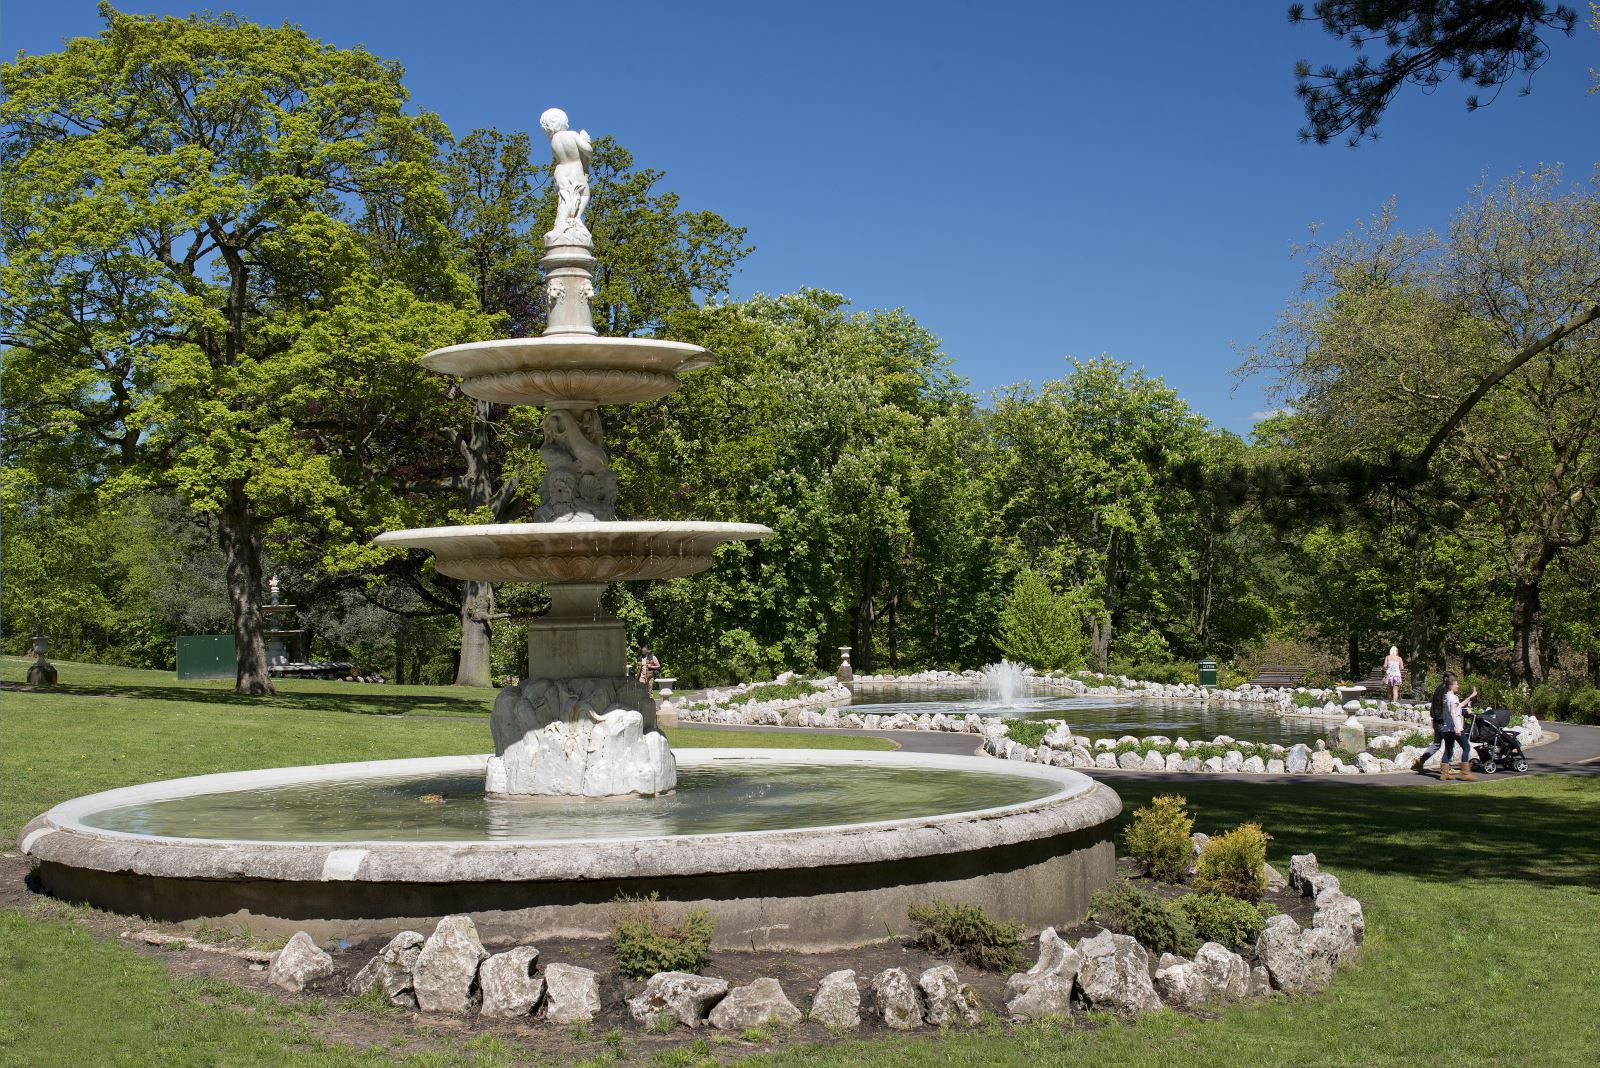 Cliffe Castle Park, Keighley Fountain